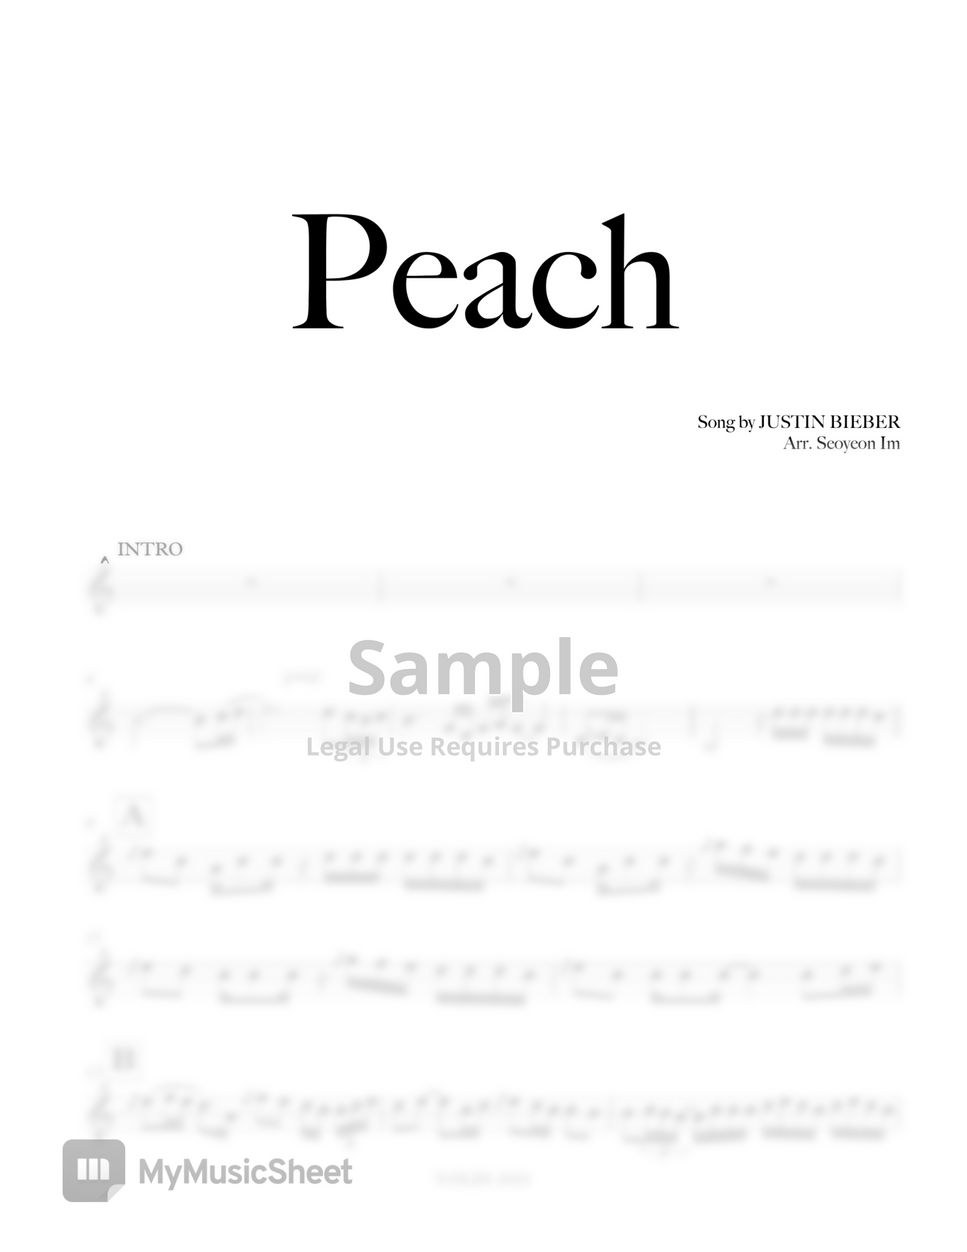 Justin Bieber - Peach (Violin ver.) by V.OLIN